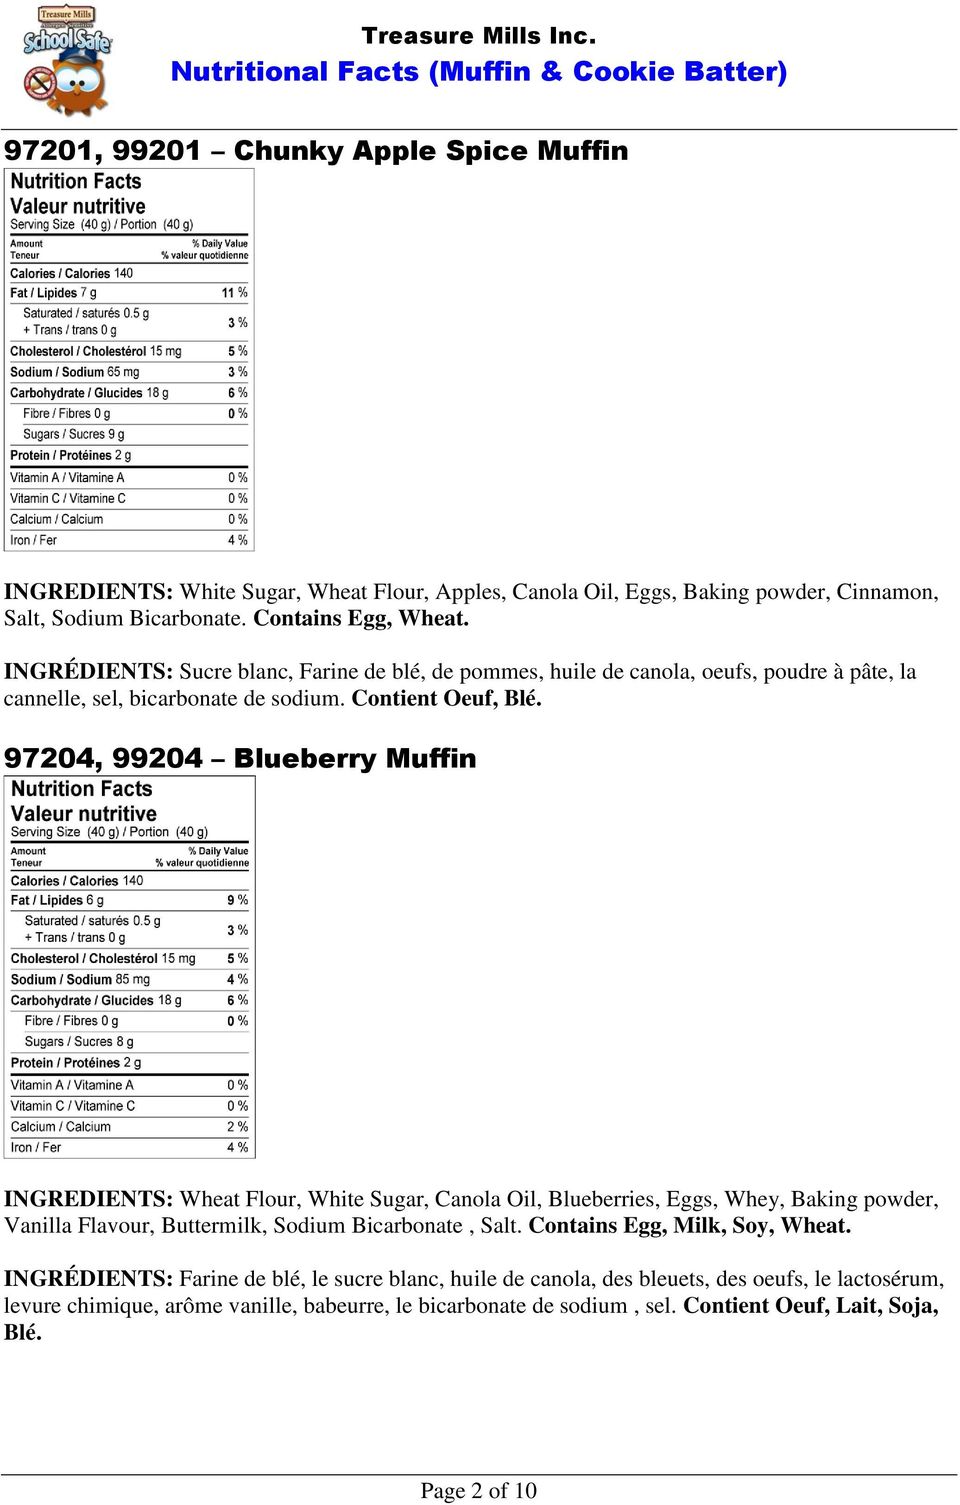 97204, 99204 Blueberry Muffin INGREDIENTS: Wheat Flour, White Sugar, Canola Oil, Blueberries, Eggs, Whey, Baking powder, Vanilla Flavour, Buttermilk, Sodium Bicarbonate, Salt.